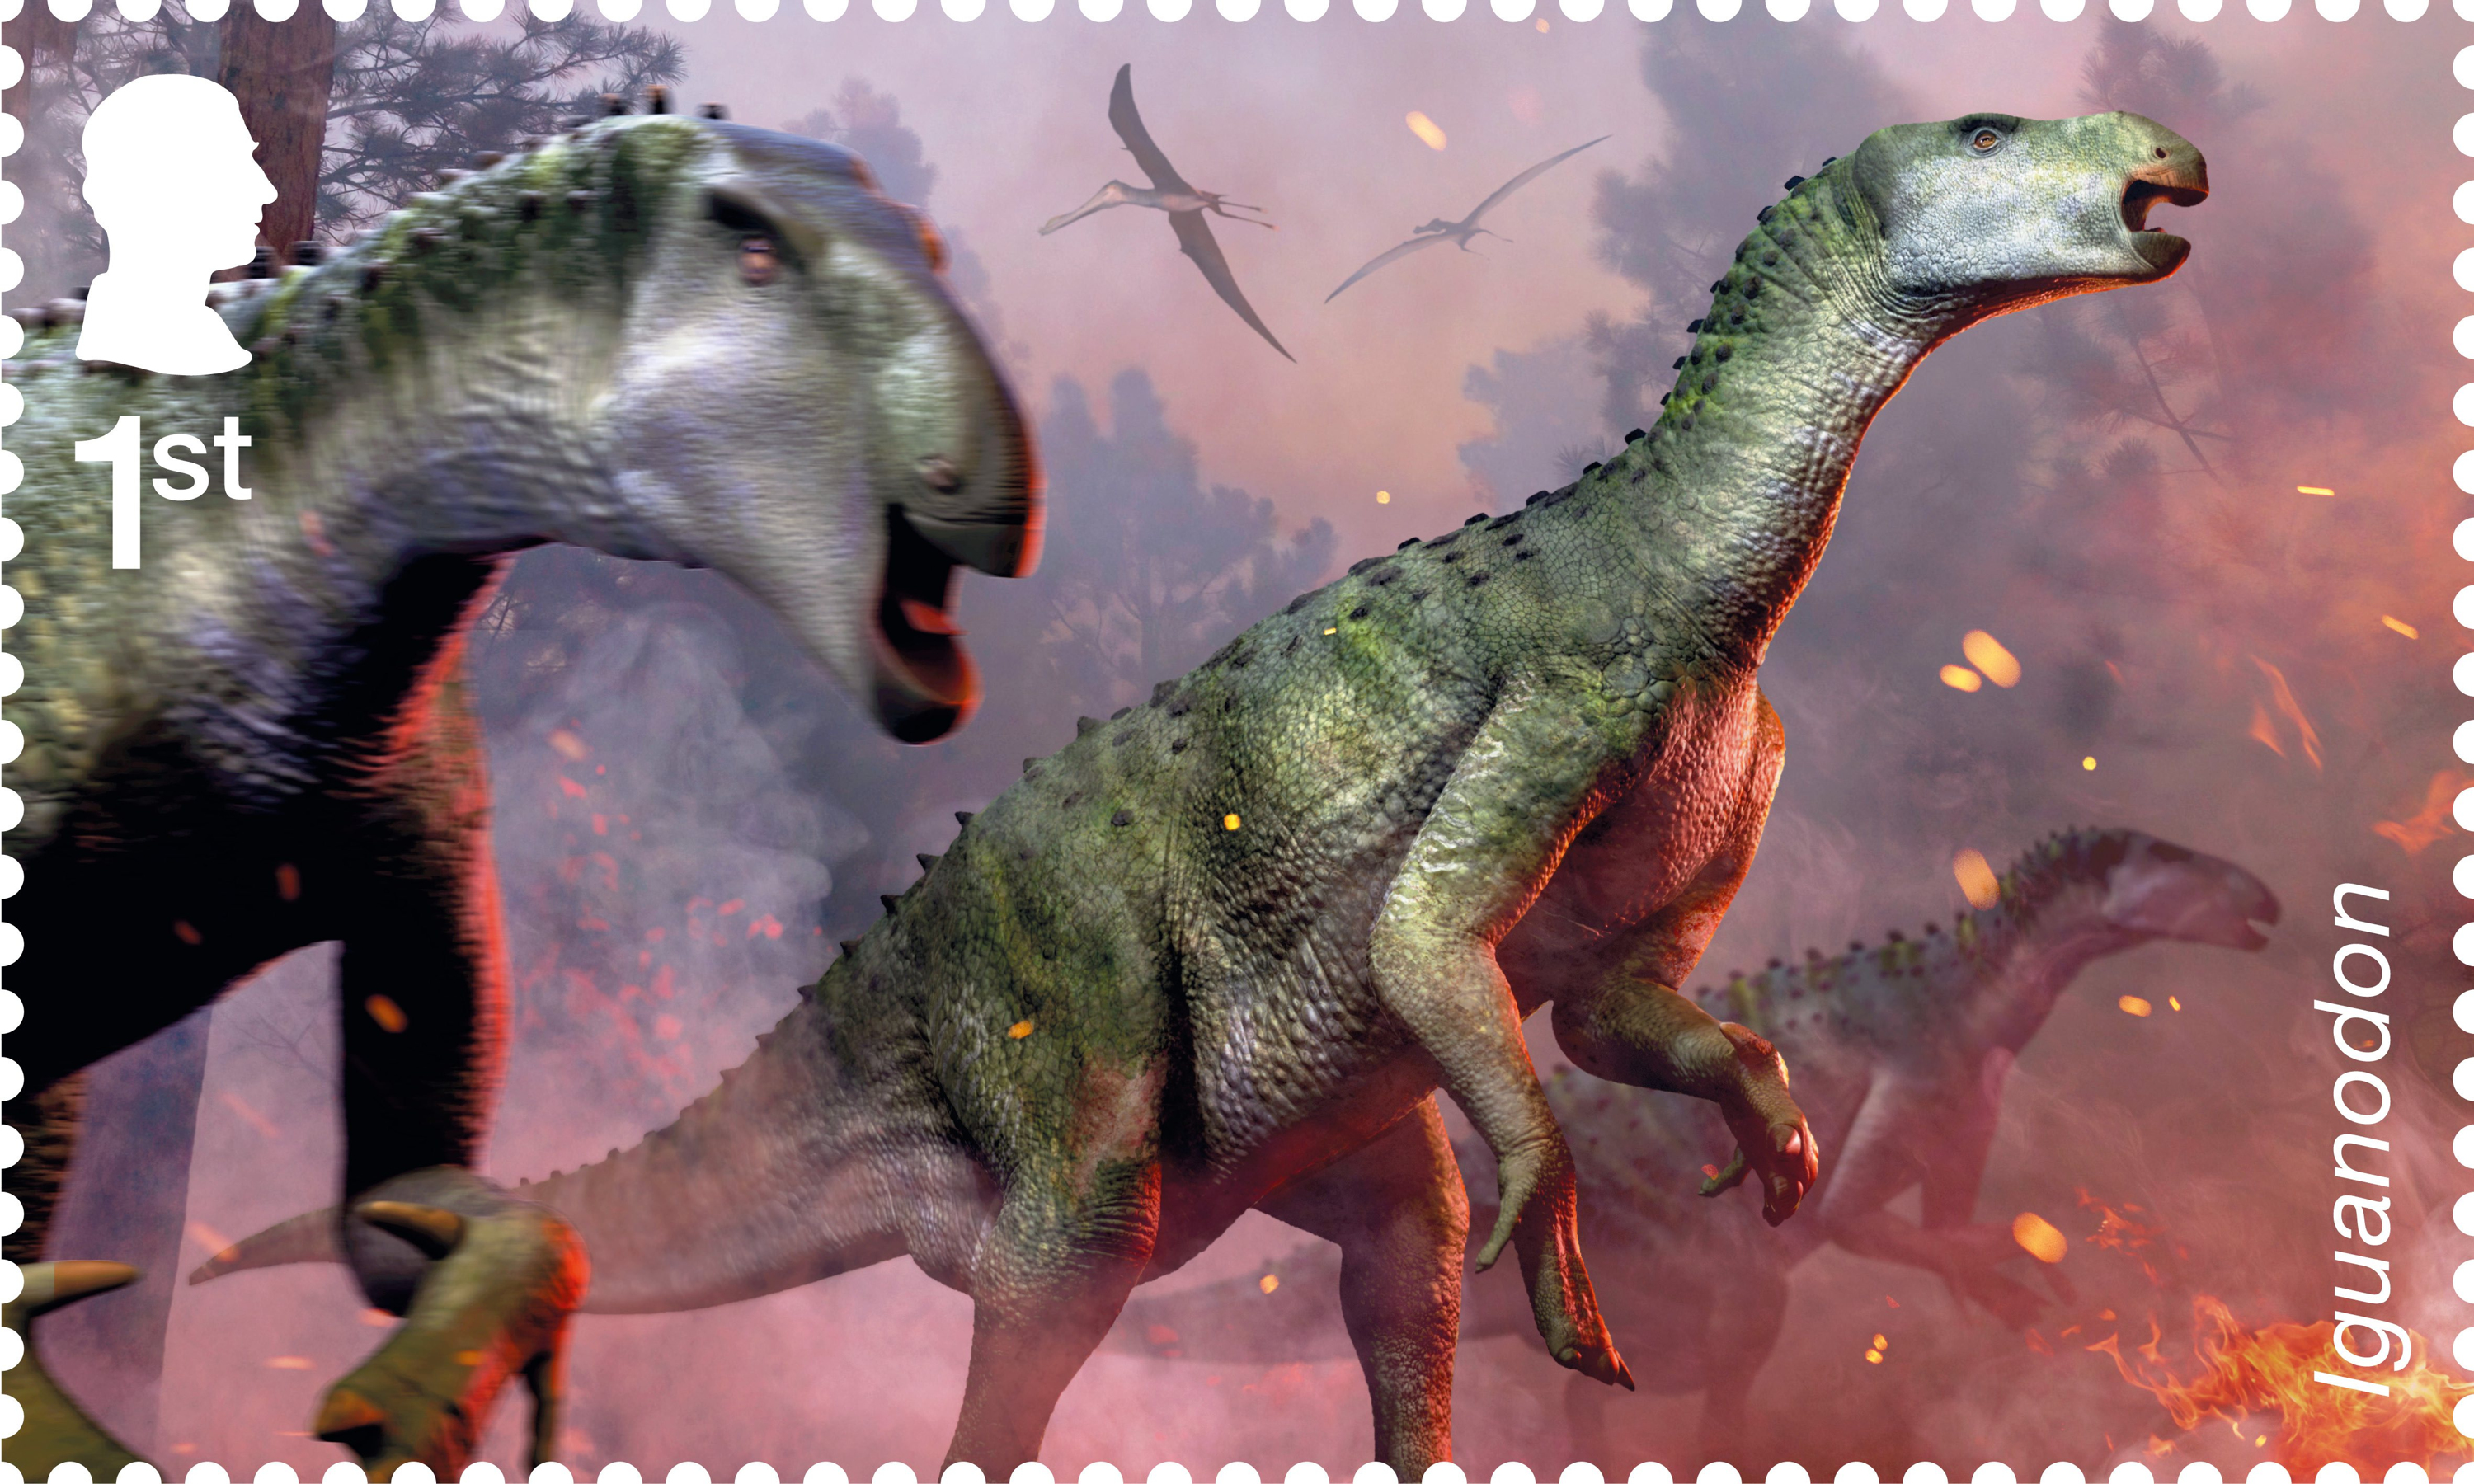 Die Briefmarken entstehen in Zusammenarbeit mit dem Natural History Museum und feiern auch die Paläontologin Mary Anning aus dem 19. Jahrhundert